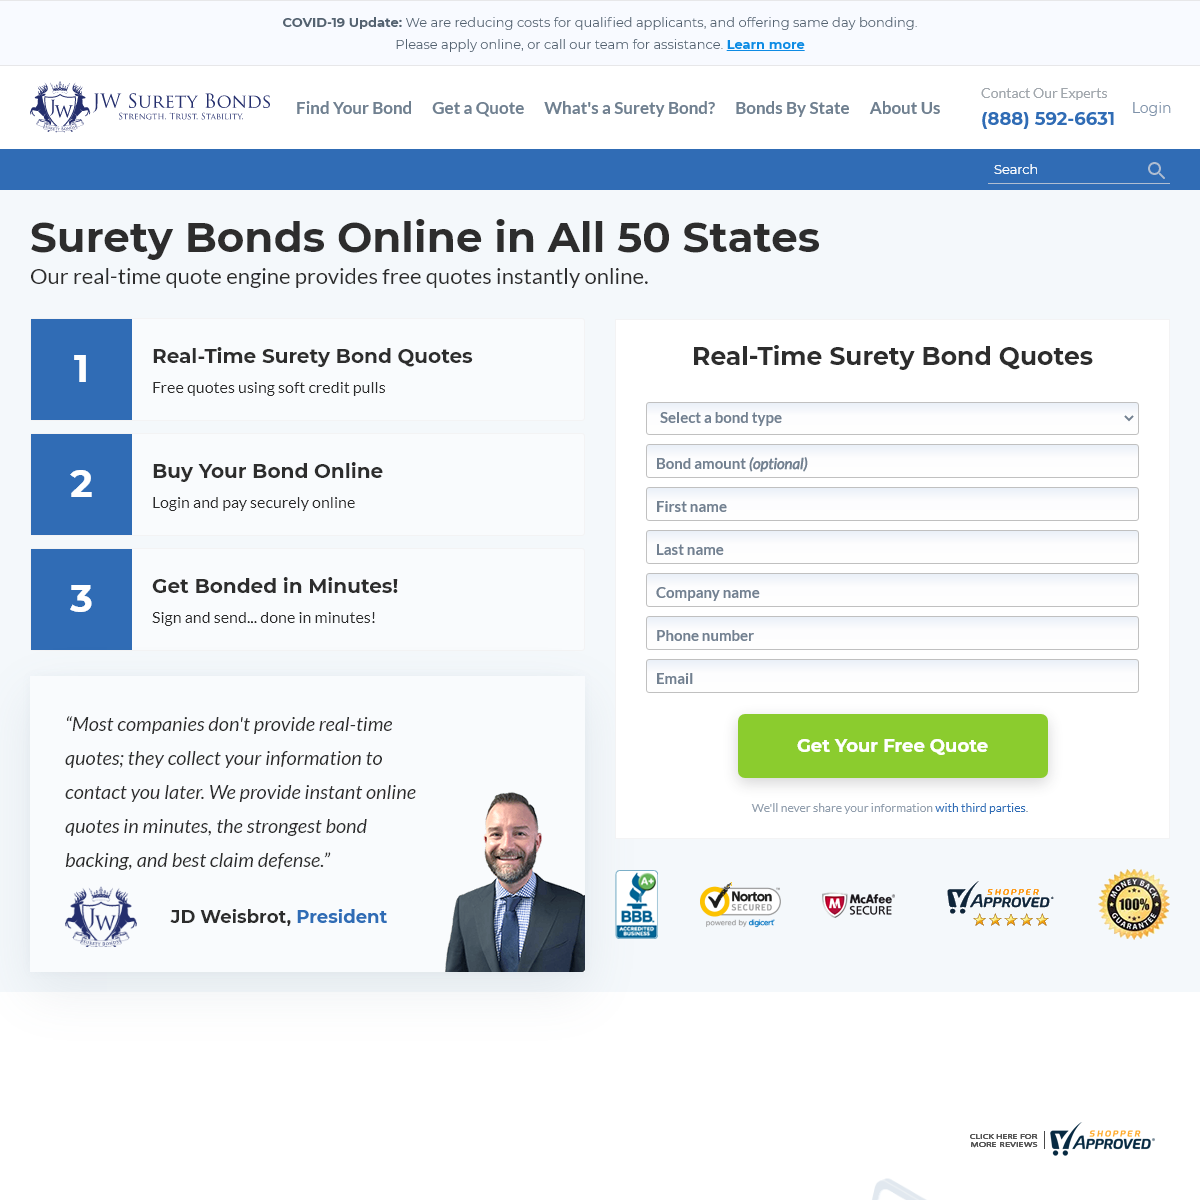 A complete backup of jwsuretybonds.com